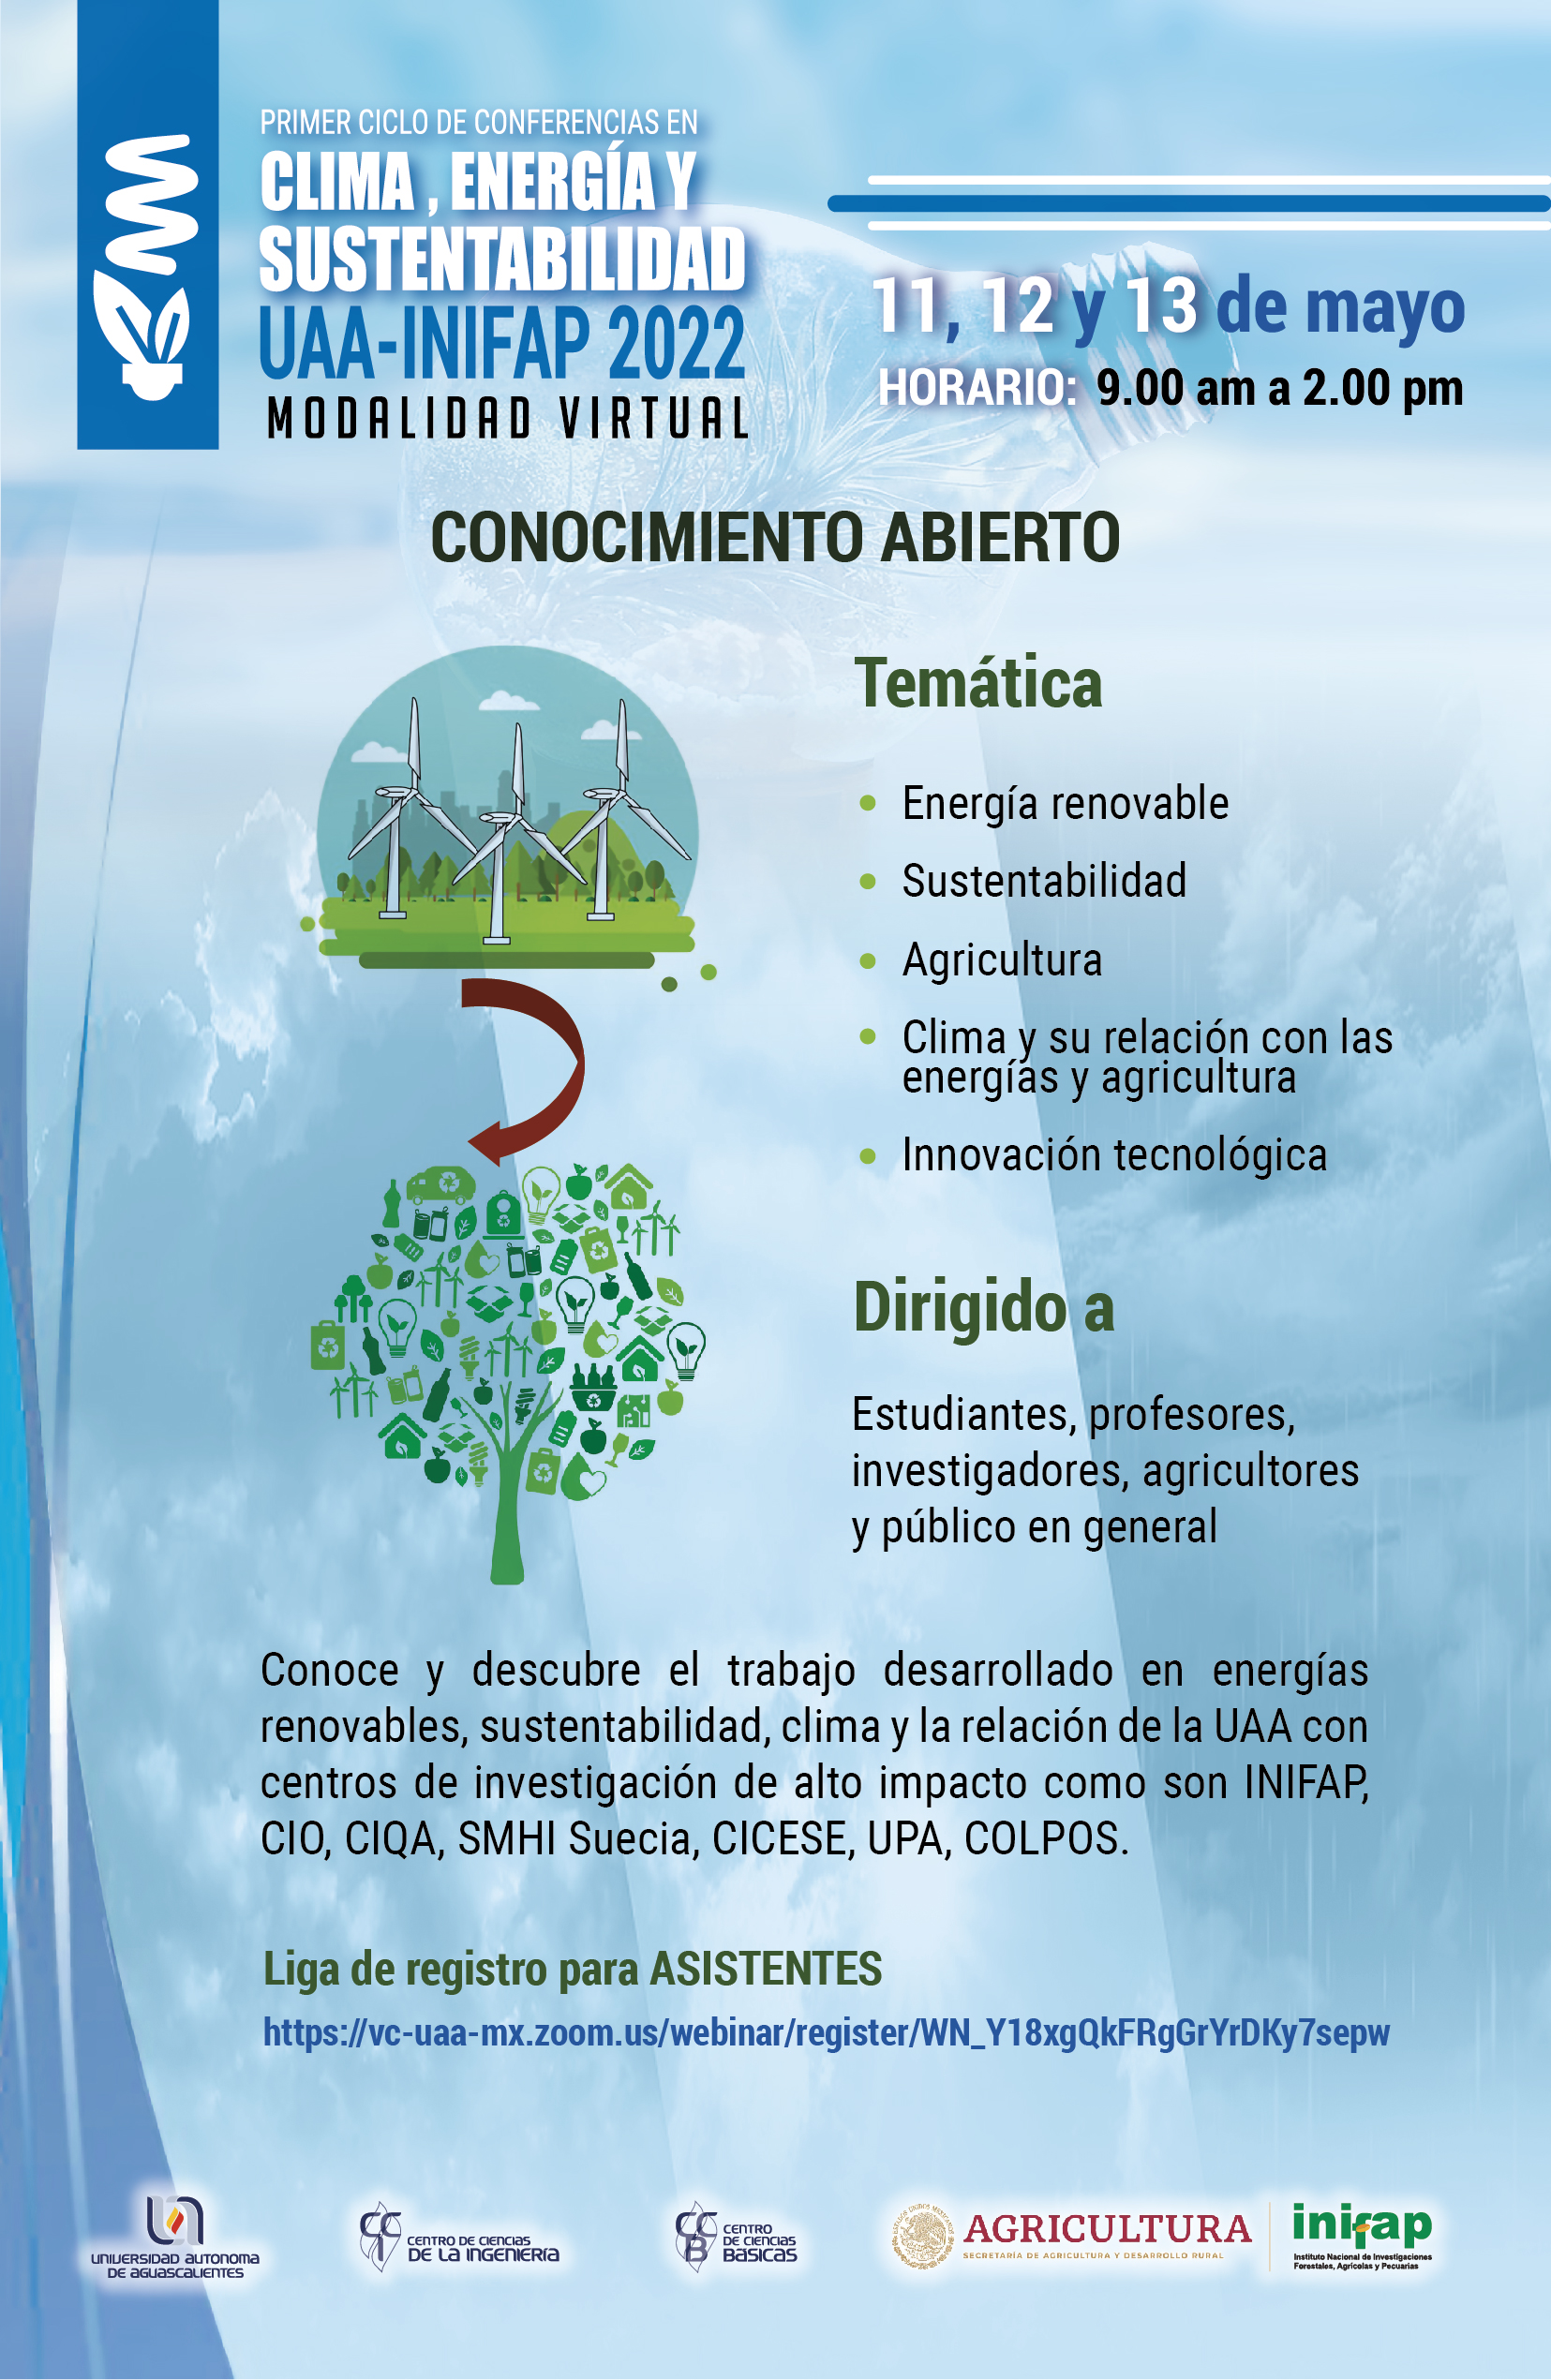 PRIMER CICLO DE CONFERENCIAS EN CLIMA, ENERGÍA Y SUSTENTABILIDAD